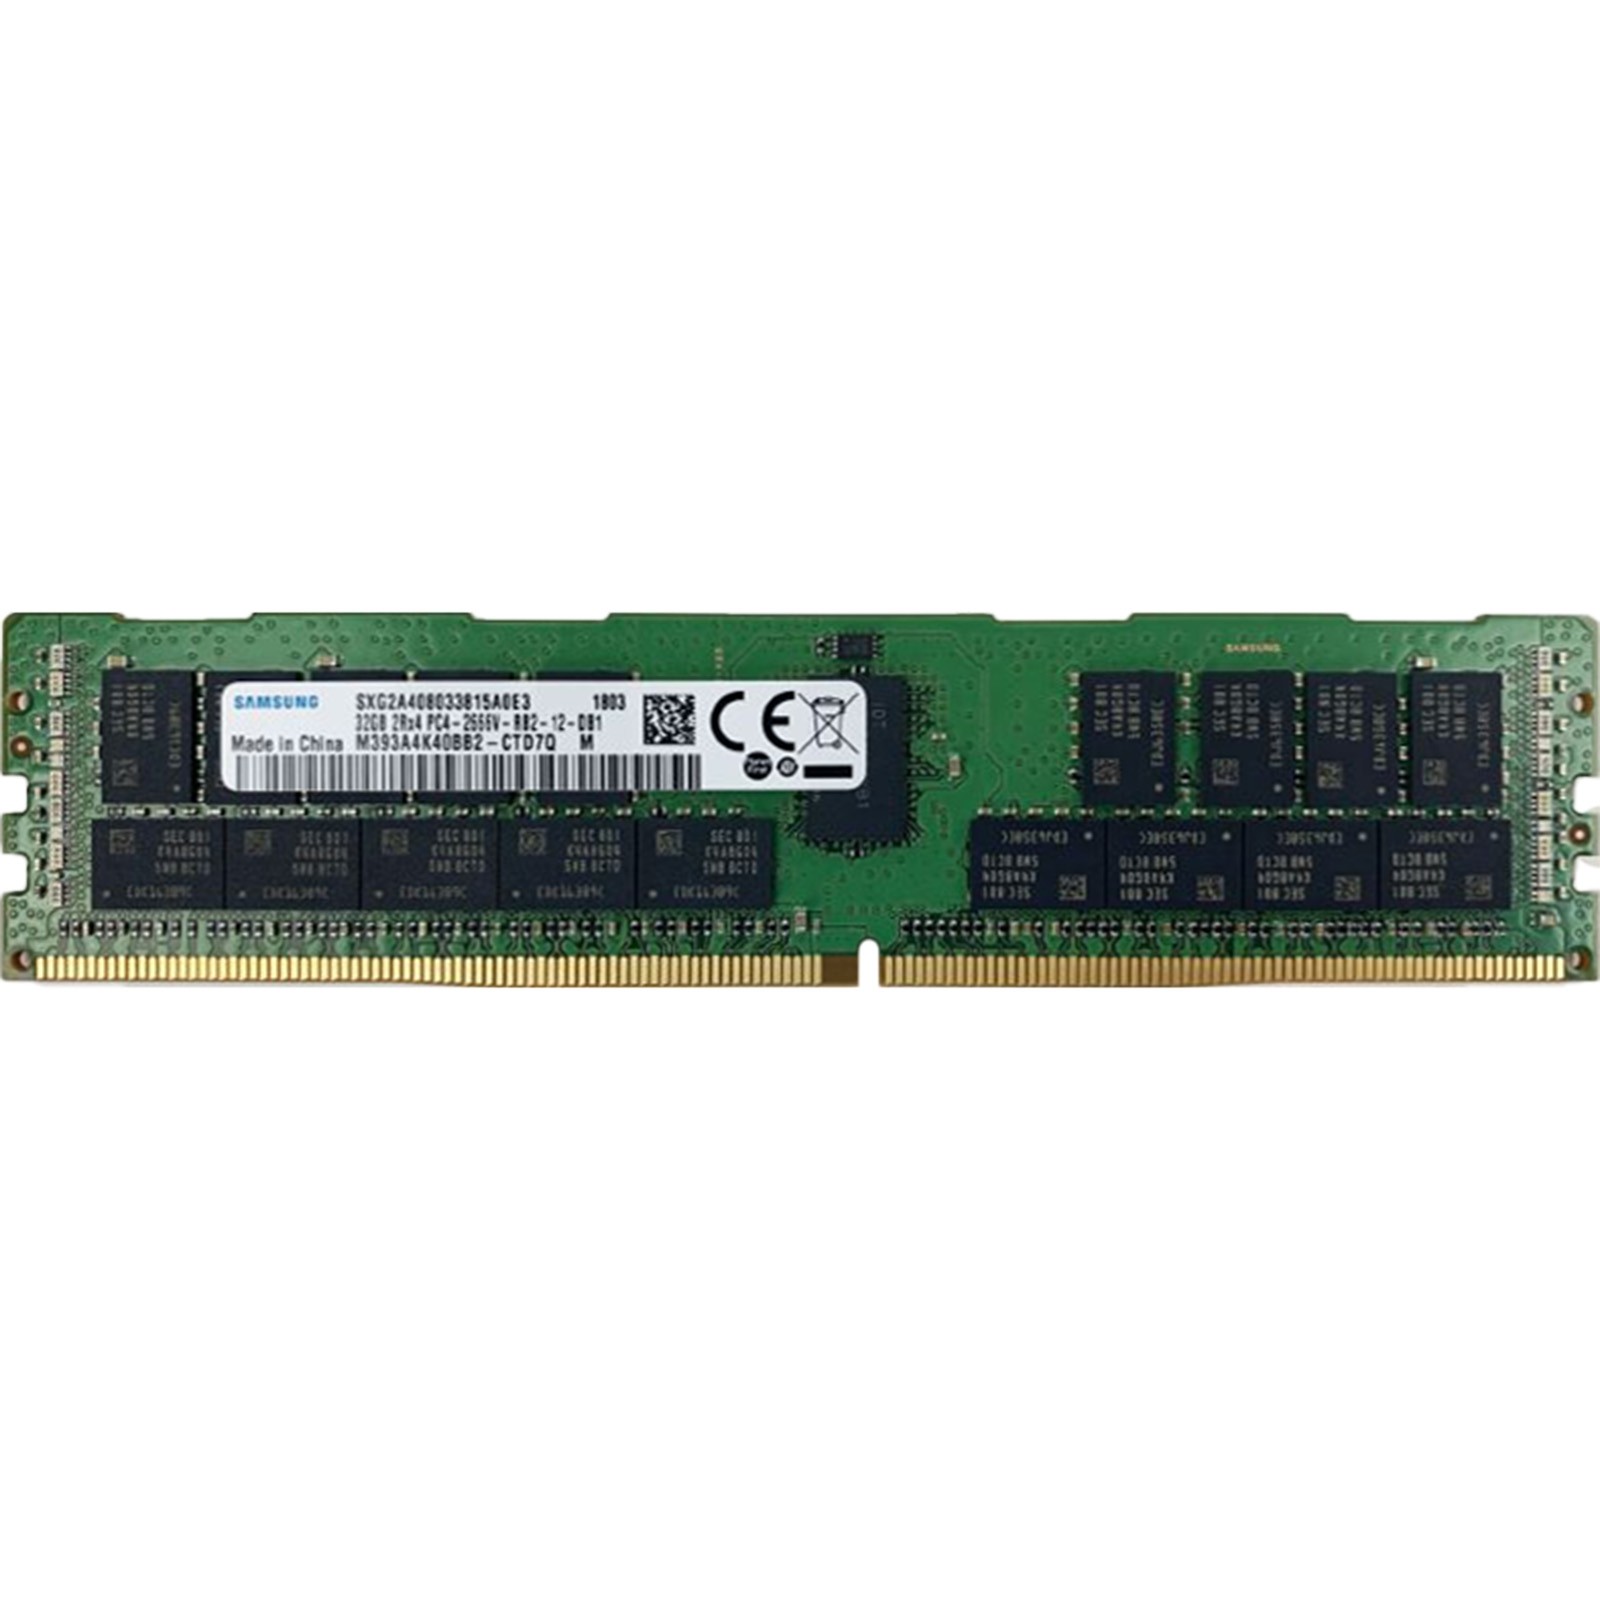 Samsung (M393A4K40BB2-CTD) - 32GB PC4-21300V-R (2RX4, DDR4-2666MHz) RAM